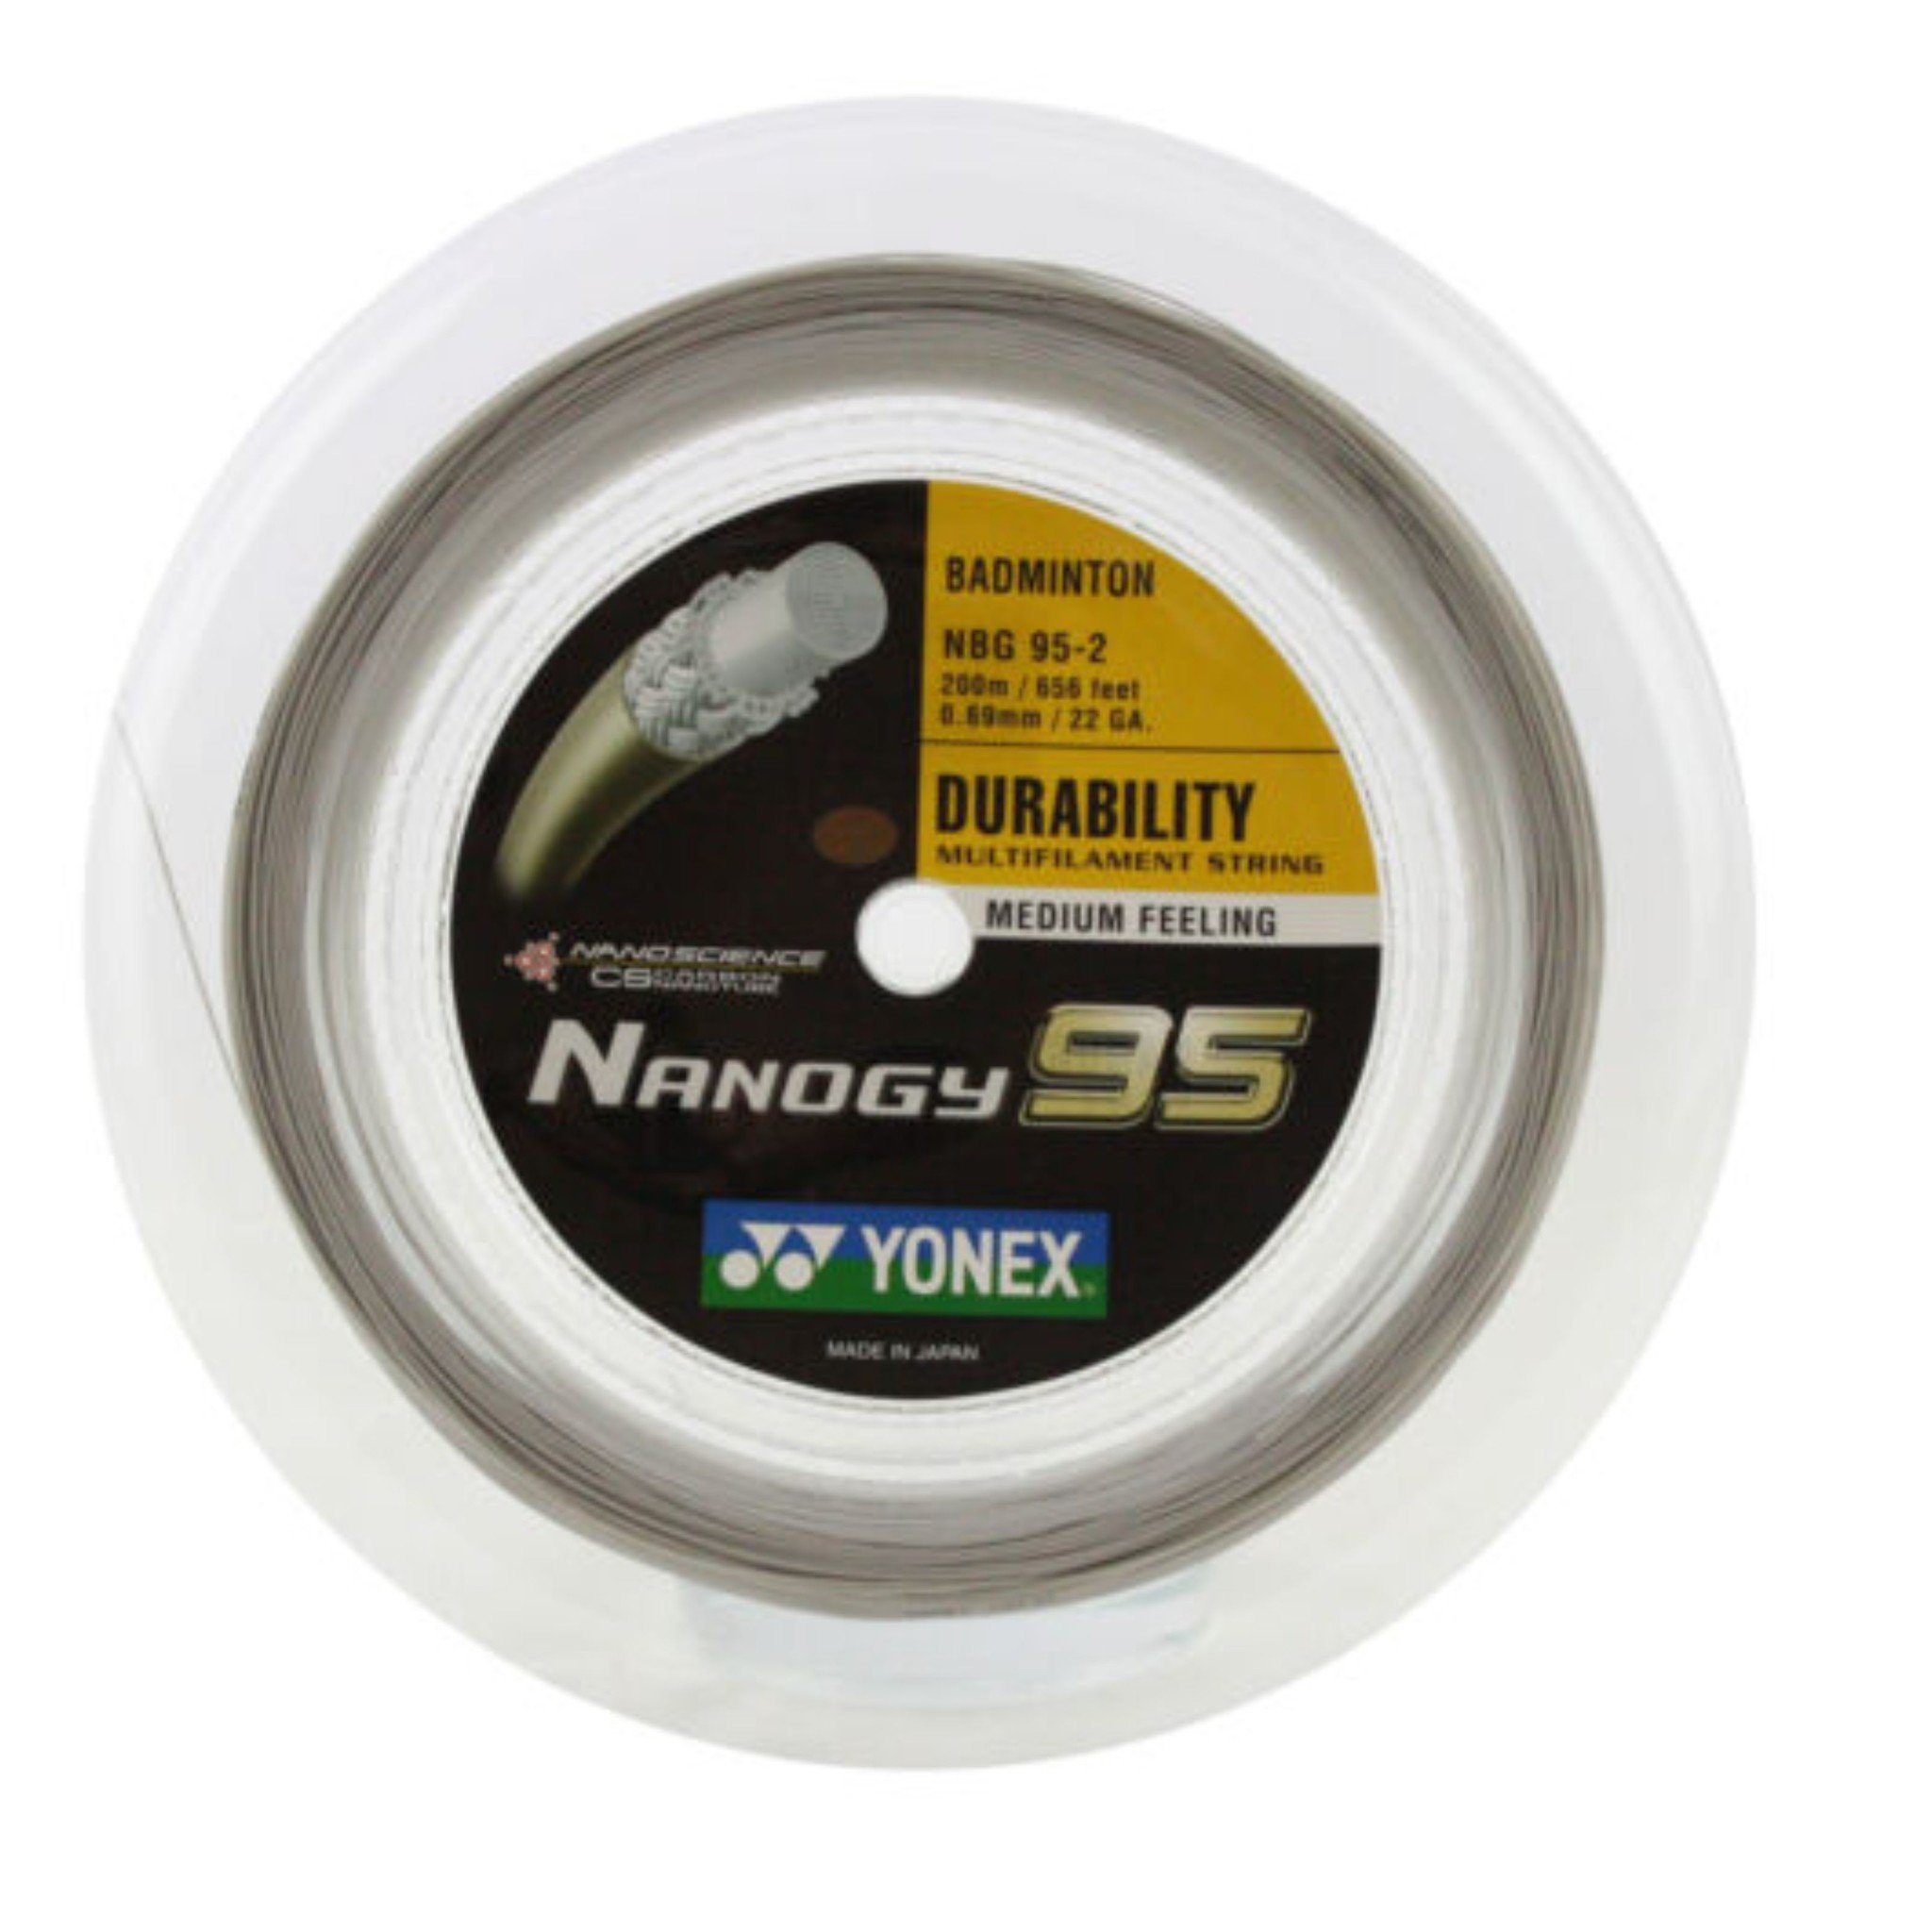 Yonex Nanogy 95 Silver Gray 0,69 mm - 200 meter